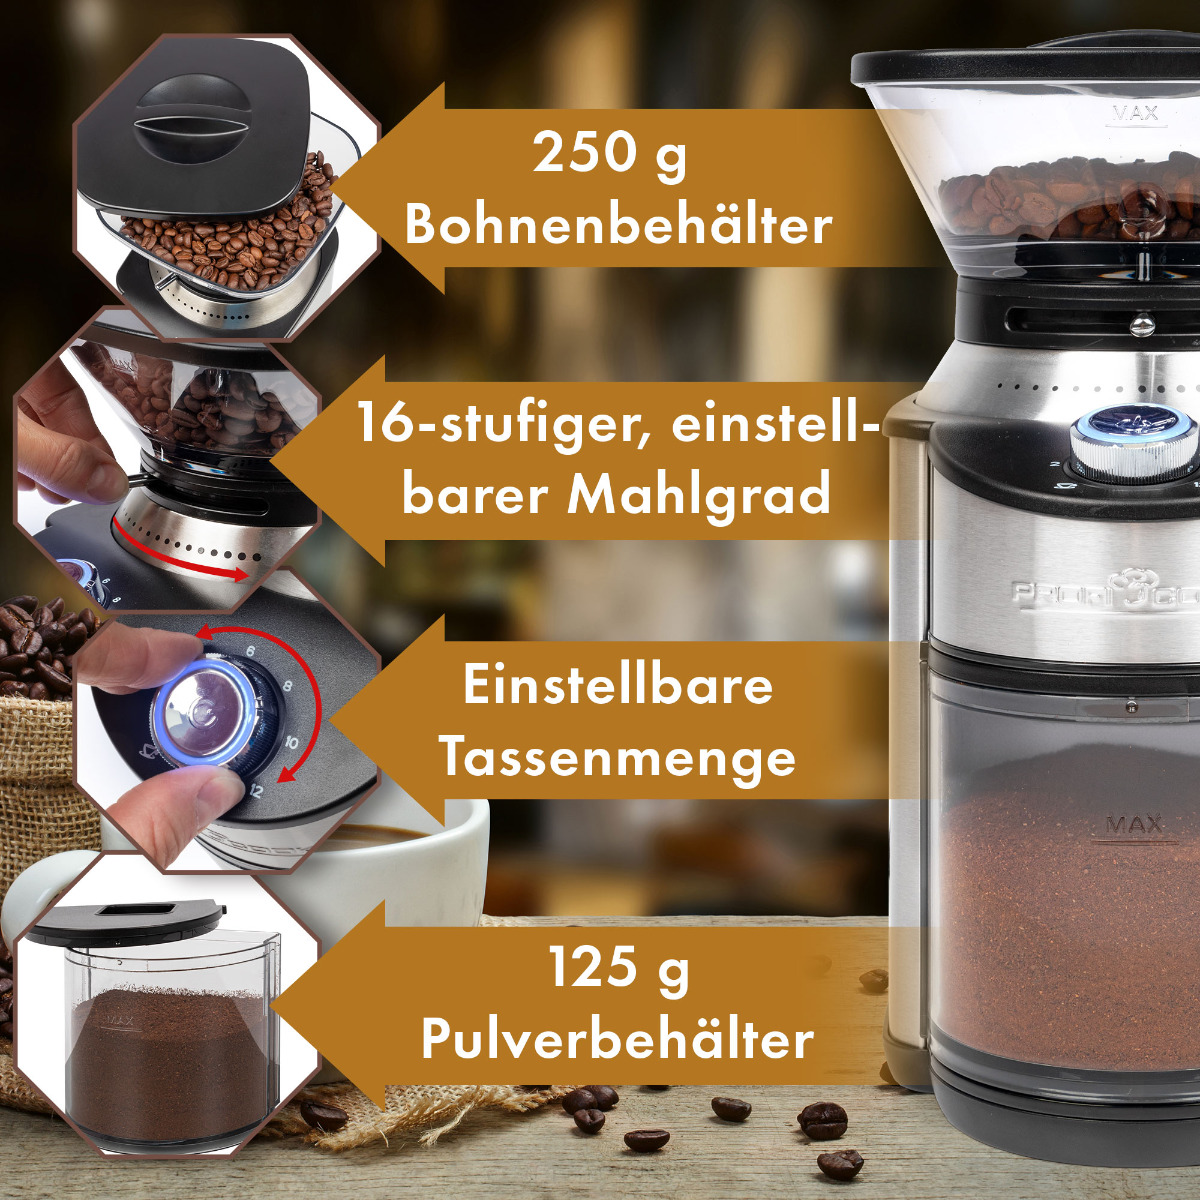 PROFICOOK PC-EKM 1205 Kaffeemühle Watt, (200 Edelstahl-Kegelmahlwerk) Silber